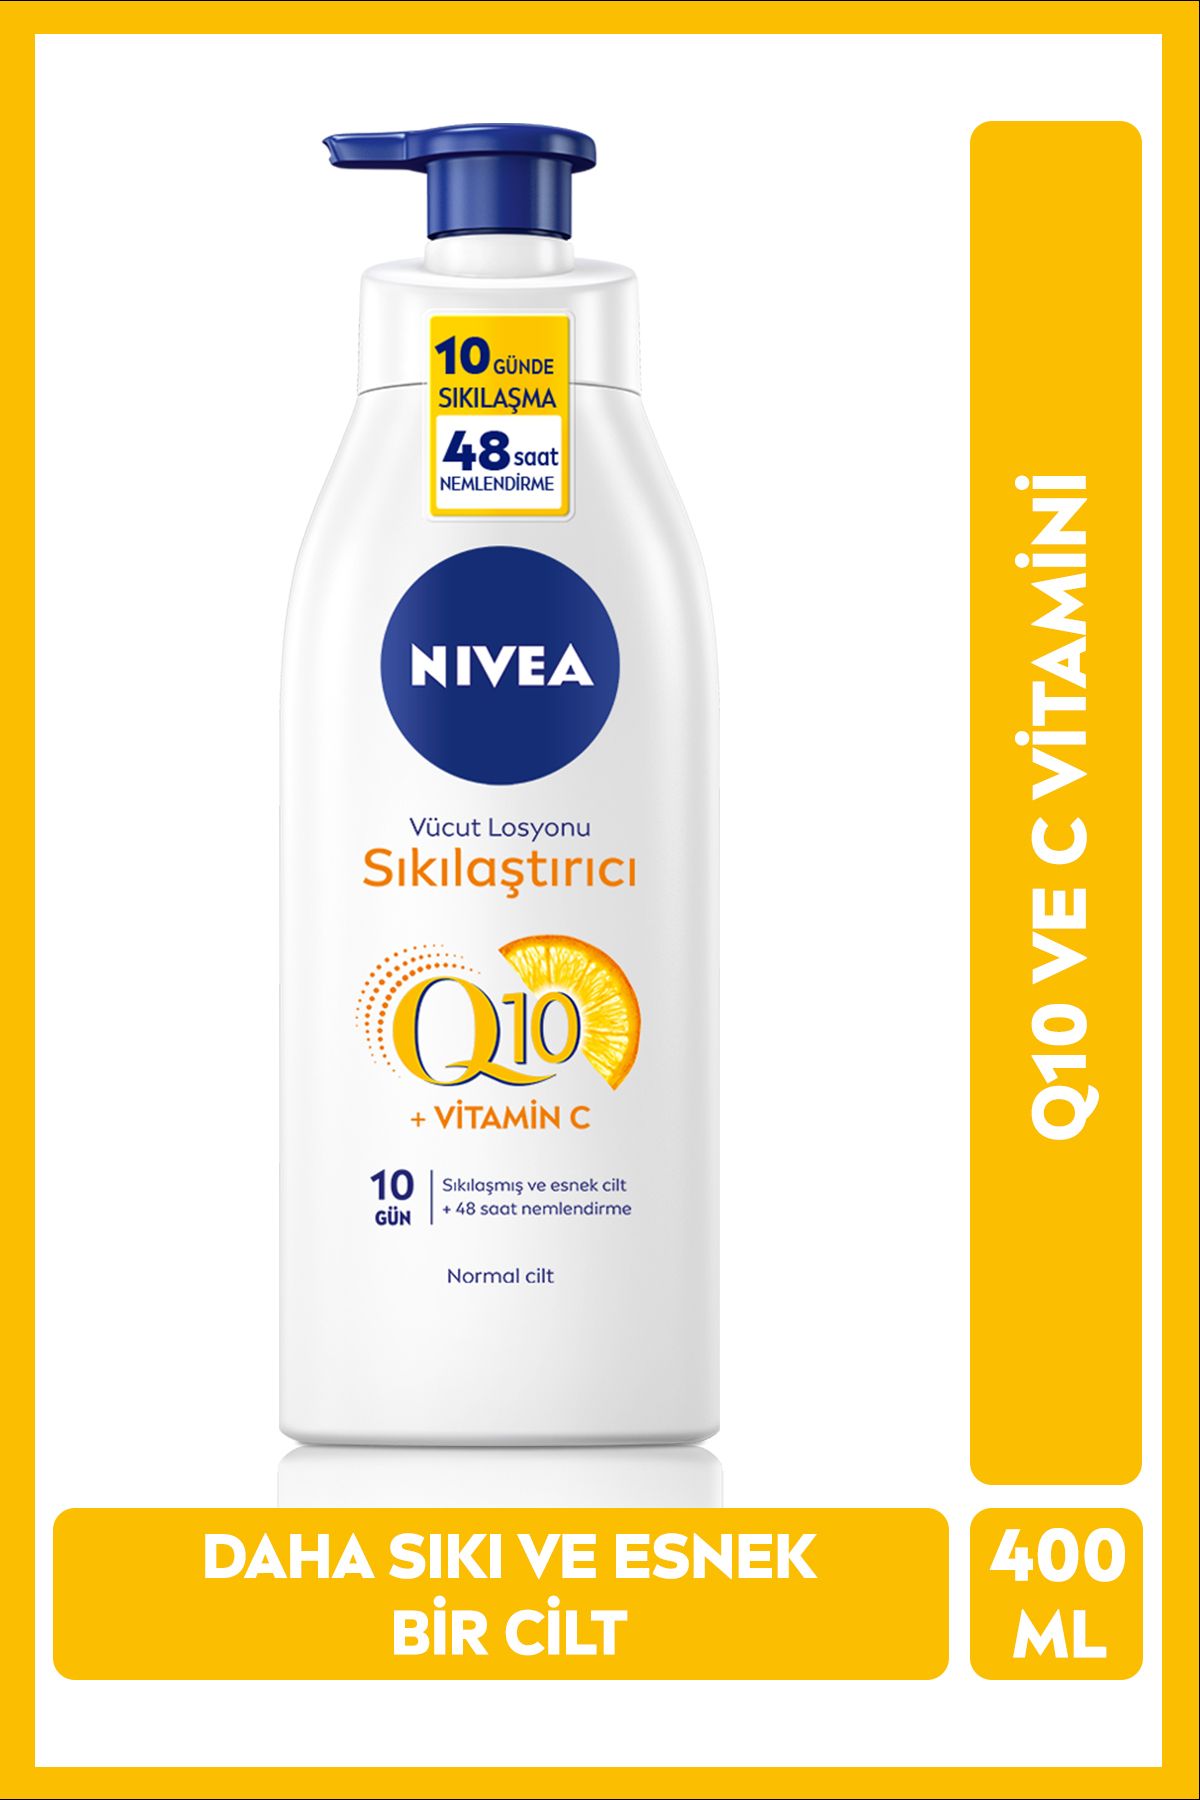 NIVEA Q10 Sıkılaştırıcı Vücut Losyonu 400ml Avantajlı Boy,vitamin C,48 Saat Nemlendirme,10 Günde Sıkılaş